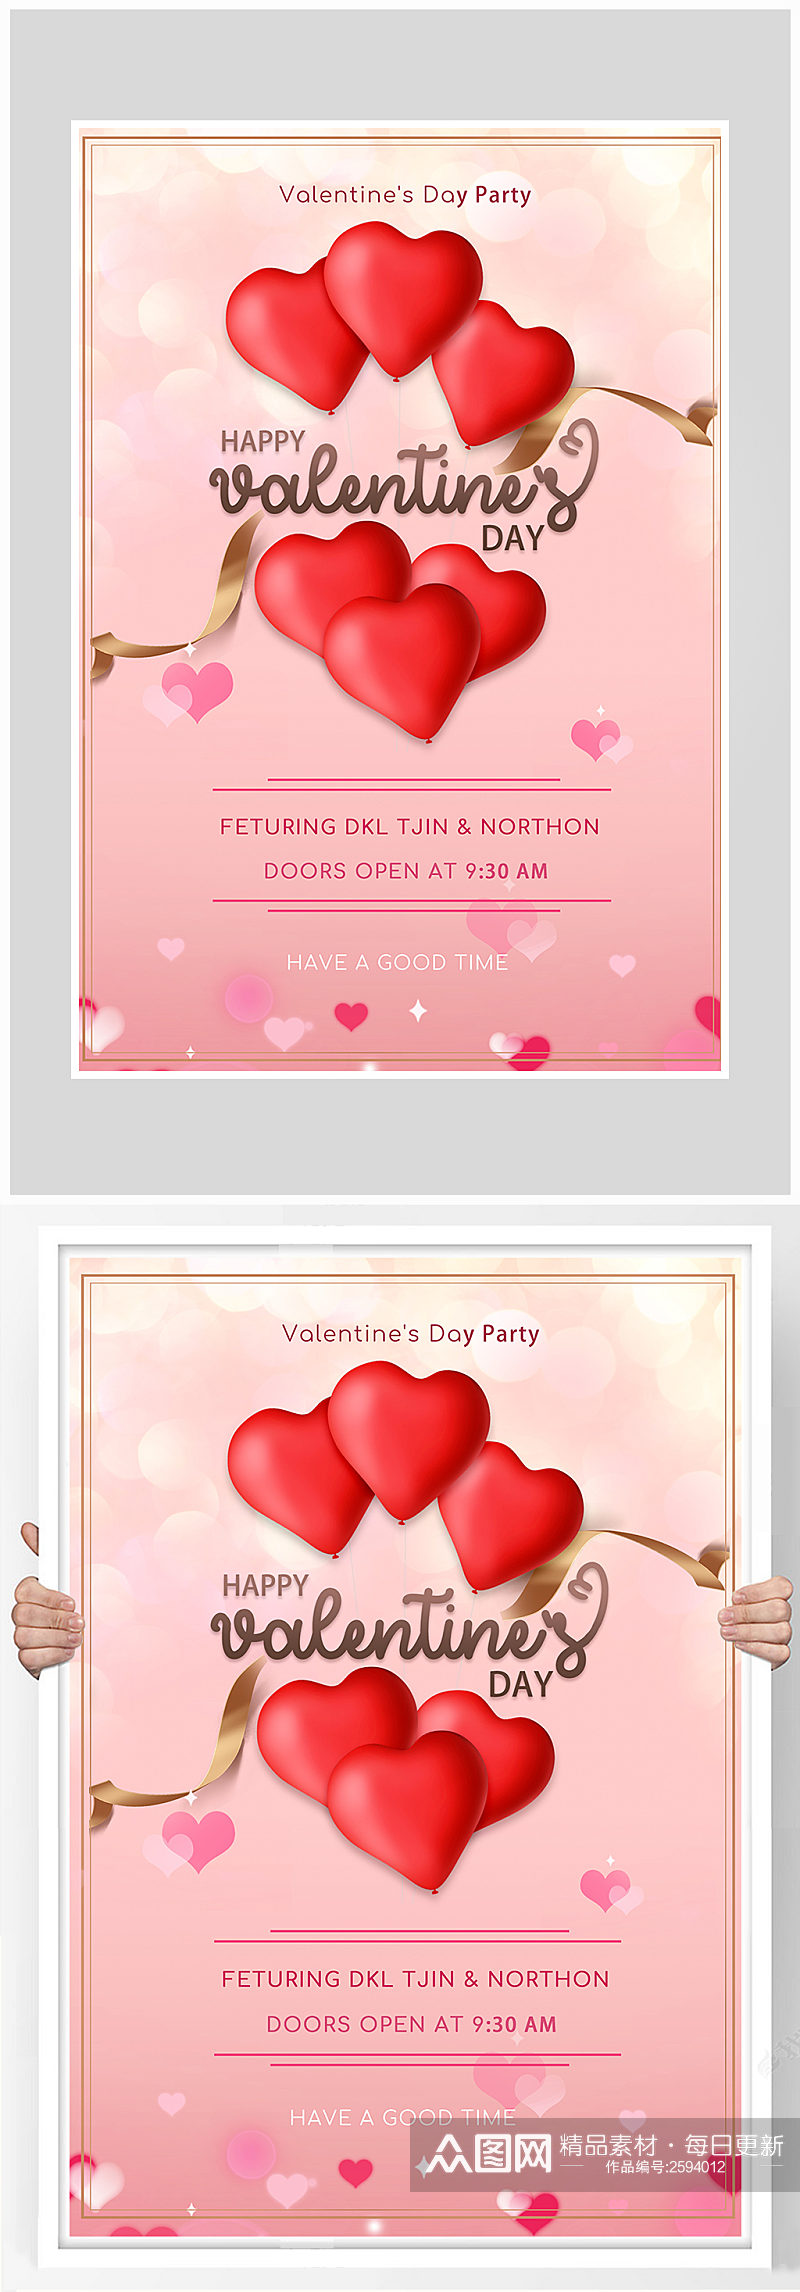 创意唯美粉色情人节爱情海报设计素材